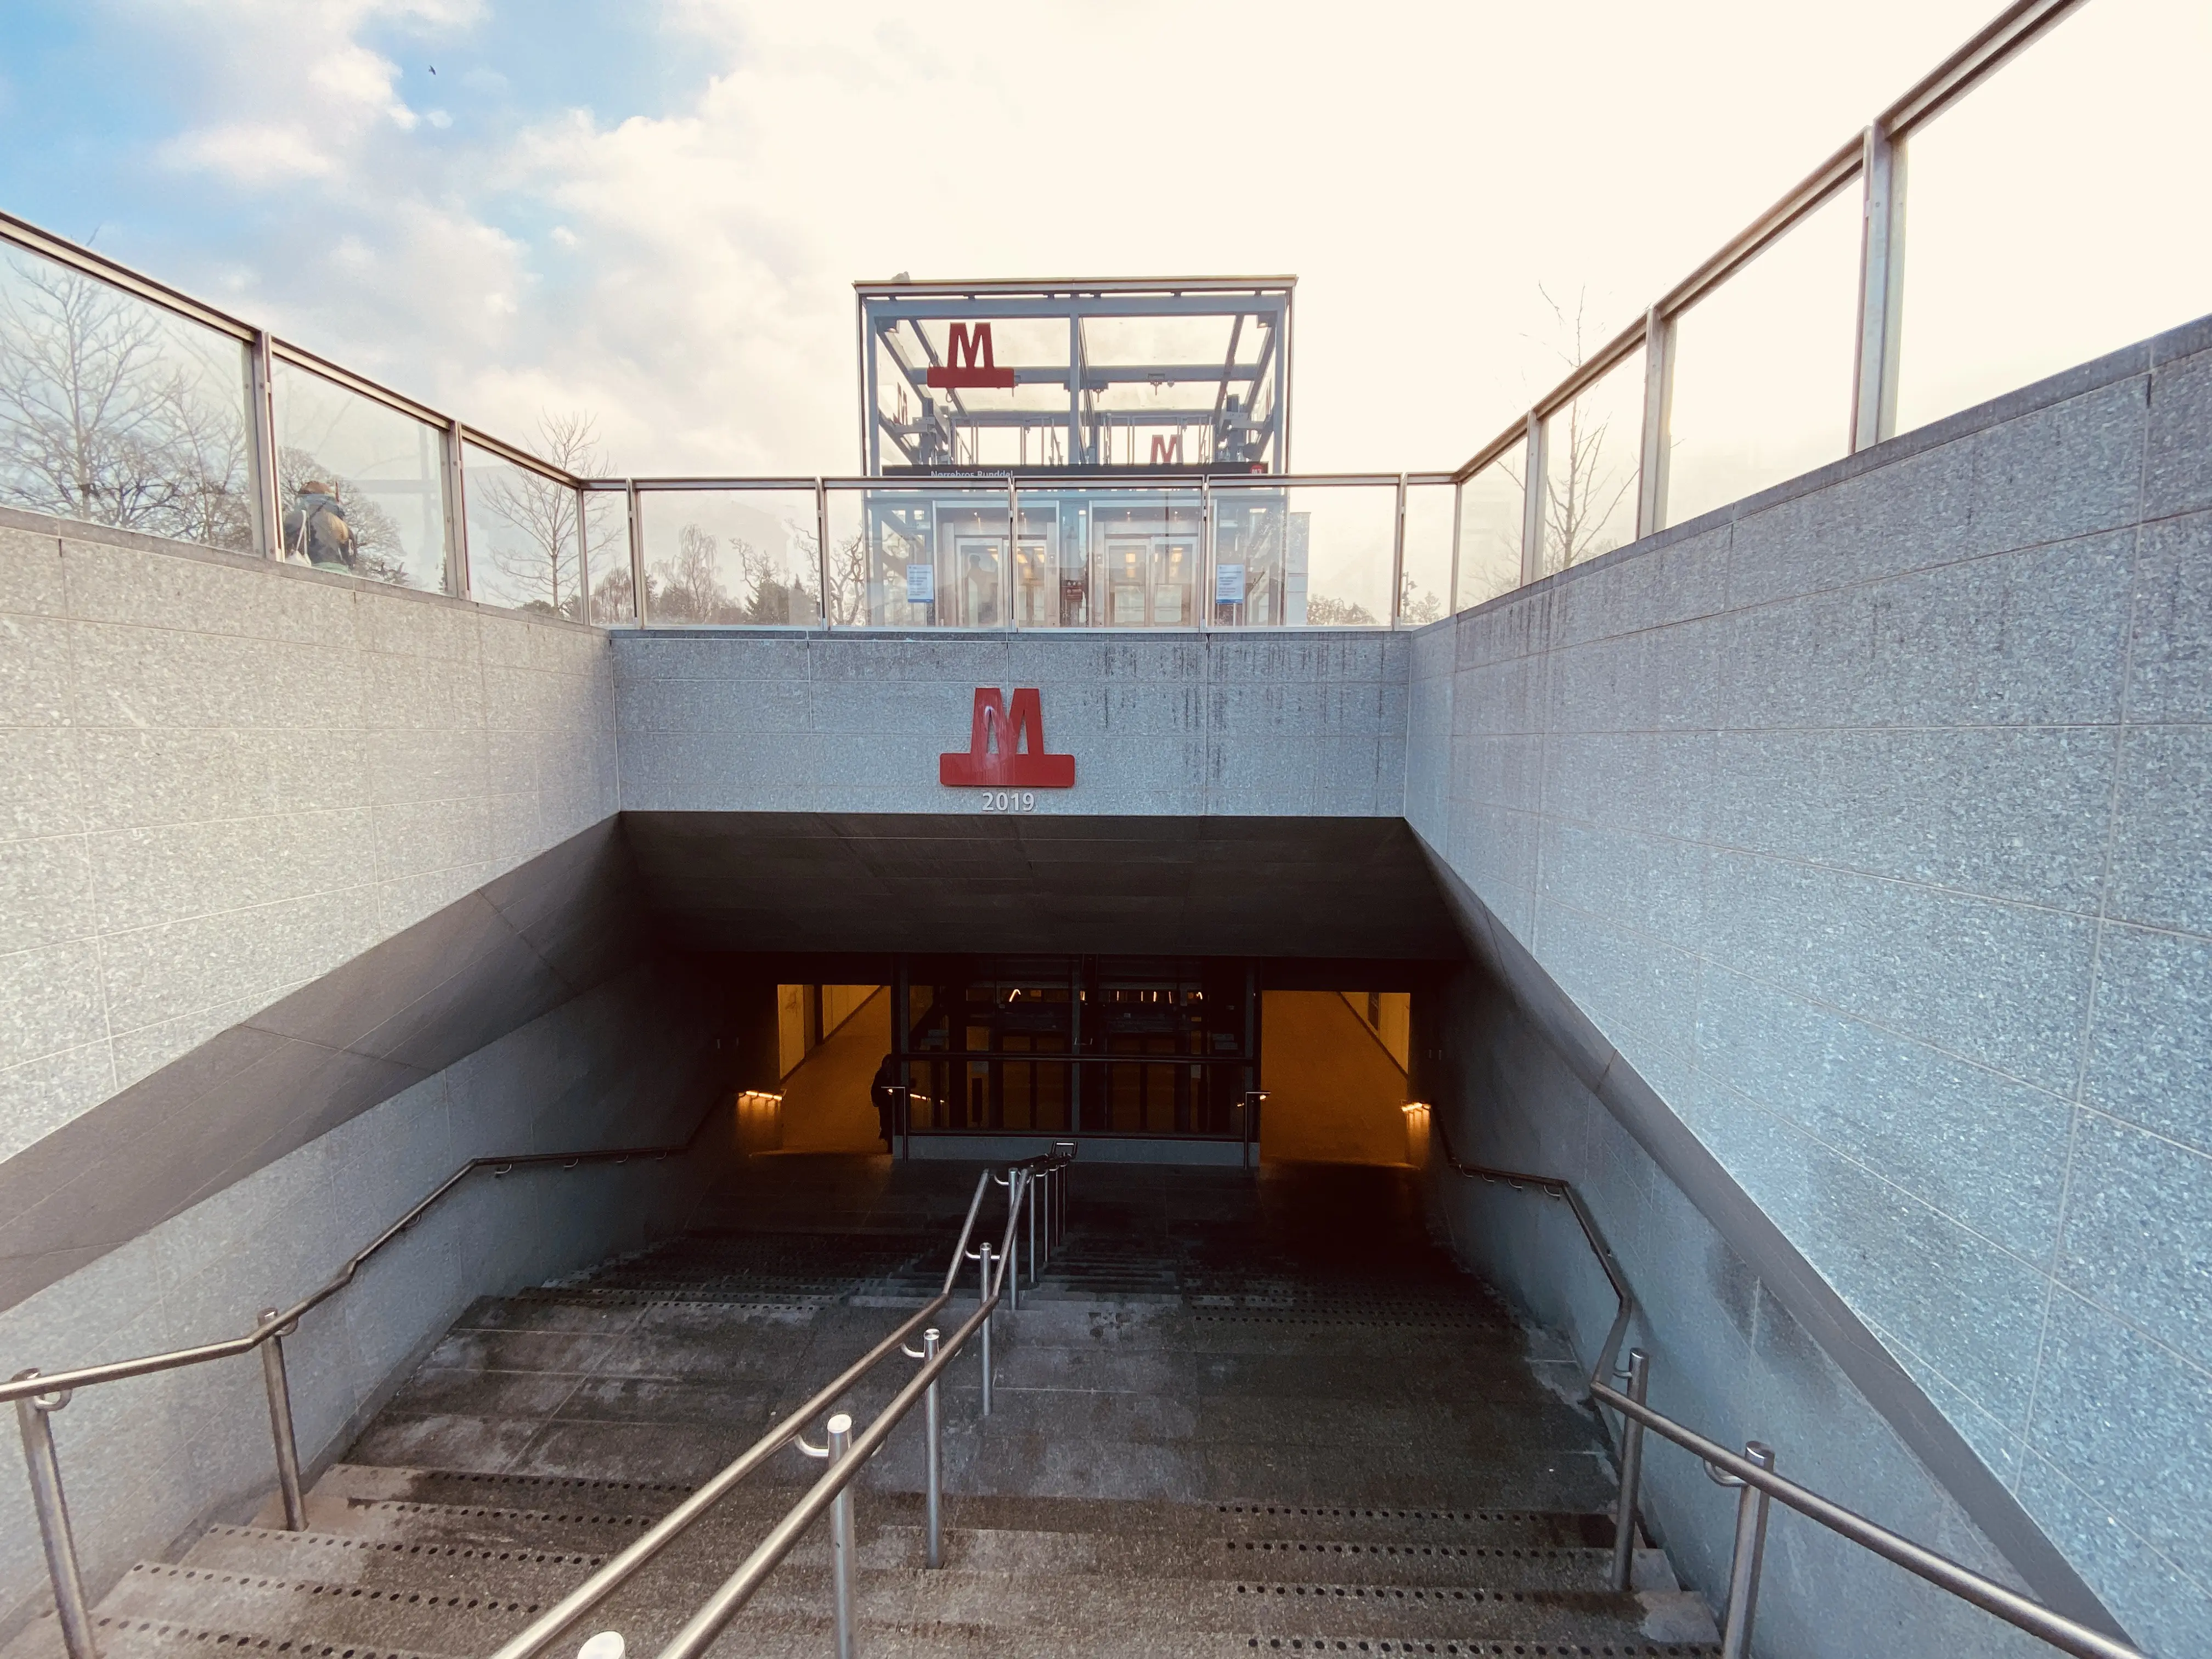 Billede af Nørrebros Runddel Metrostation.